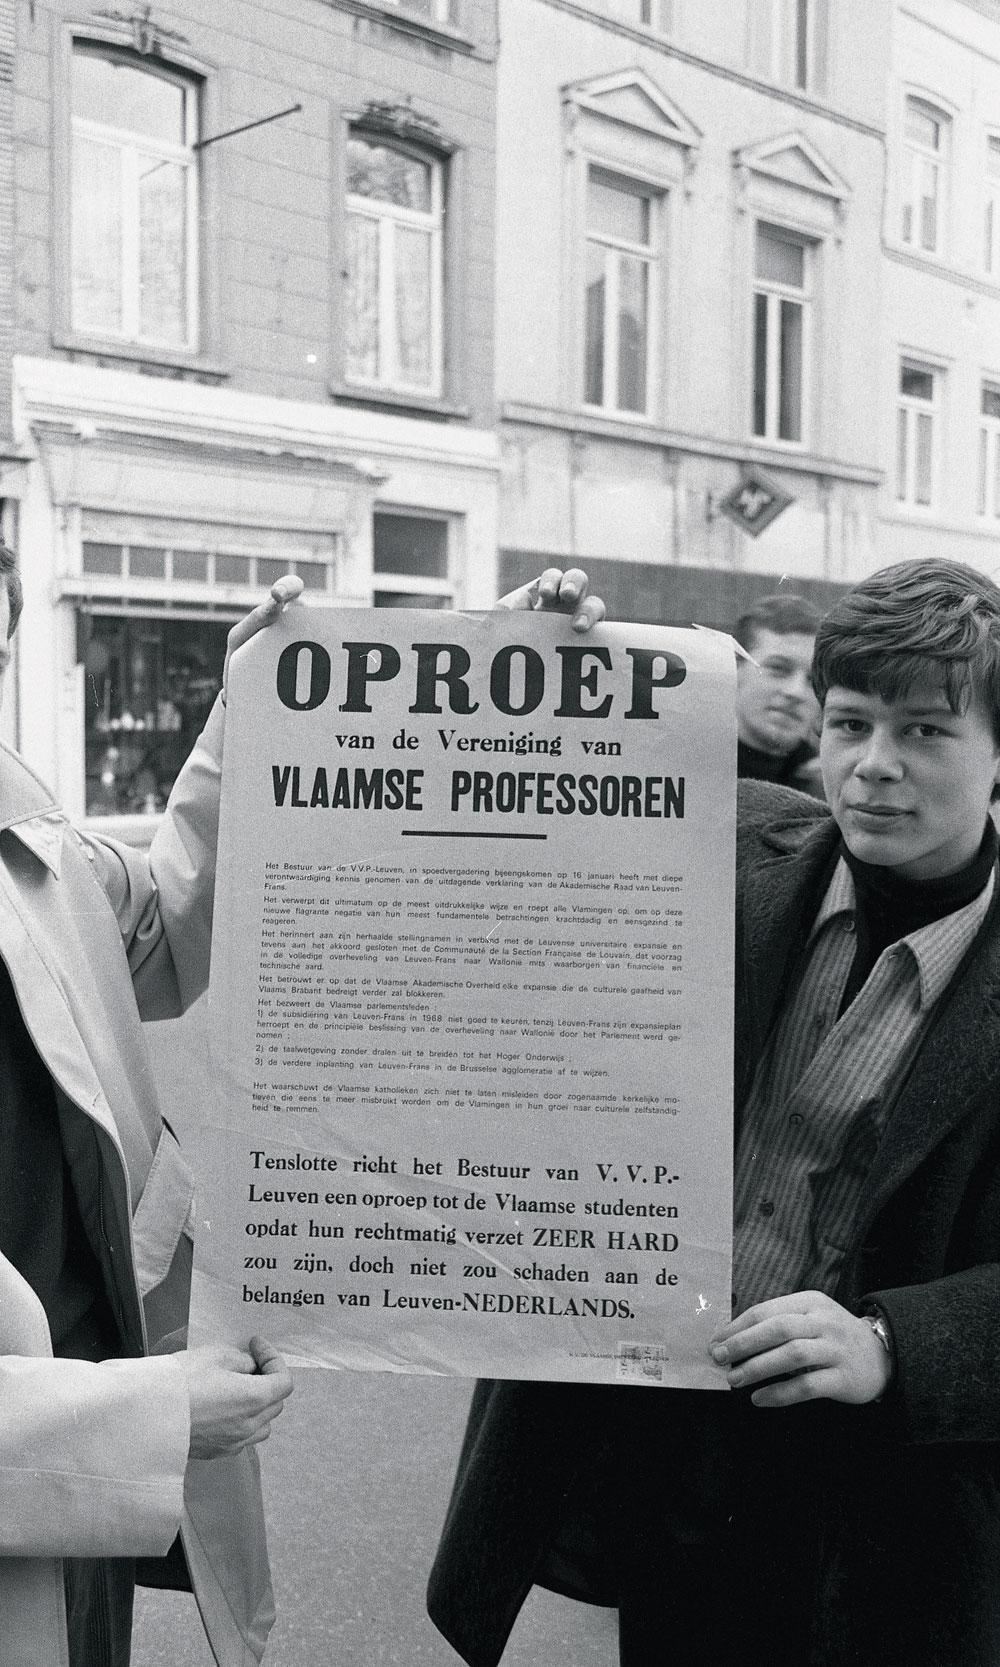 Les professeurs flamands font pression pour la scission de l'université de Louvain.